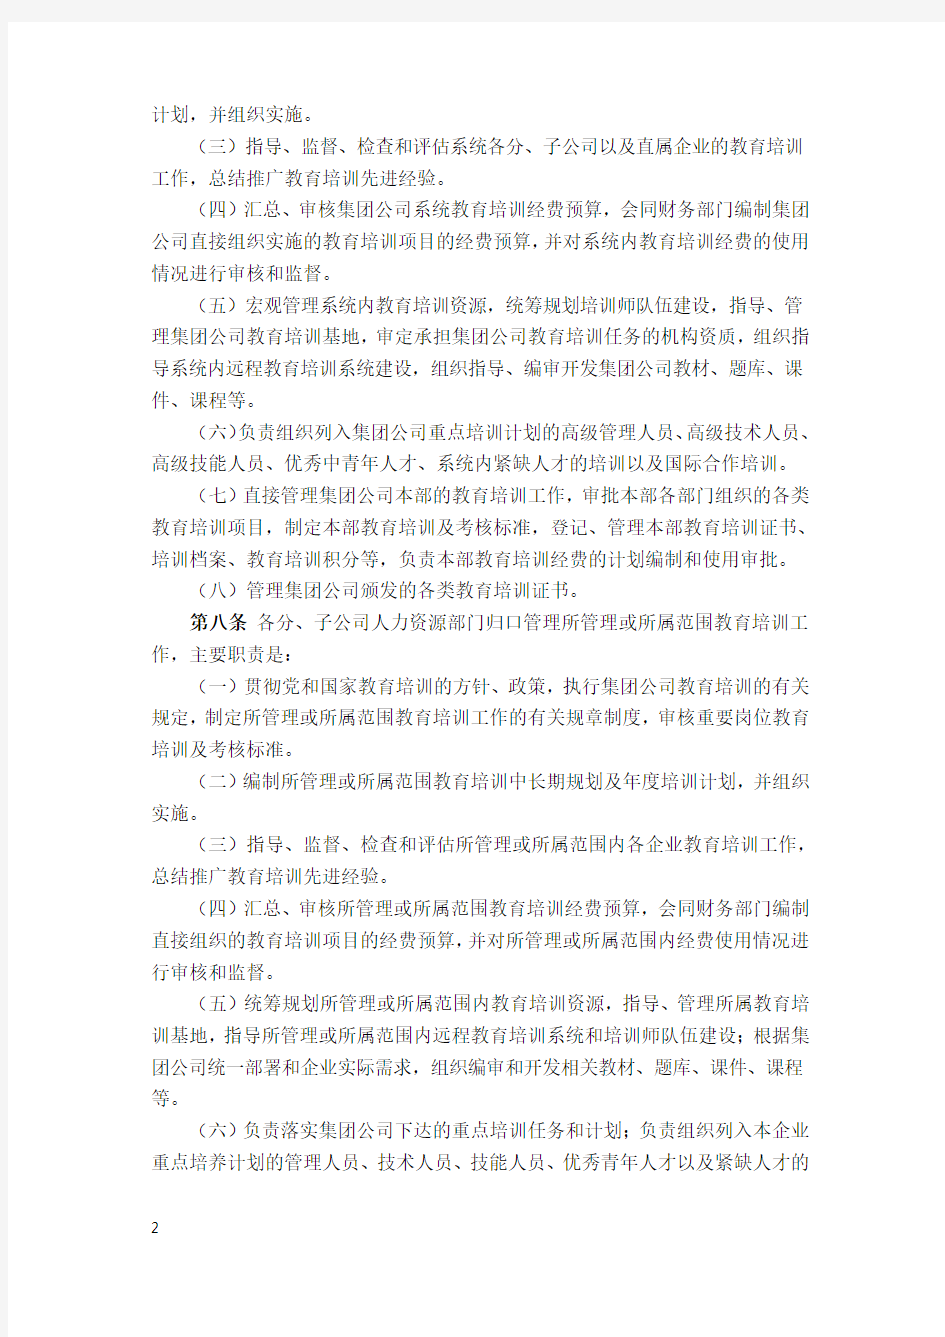 中国大唐集团公司教育培训管理规定